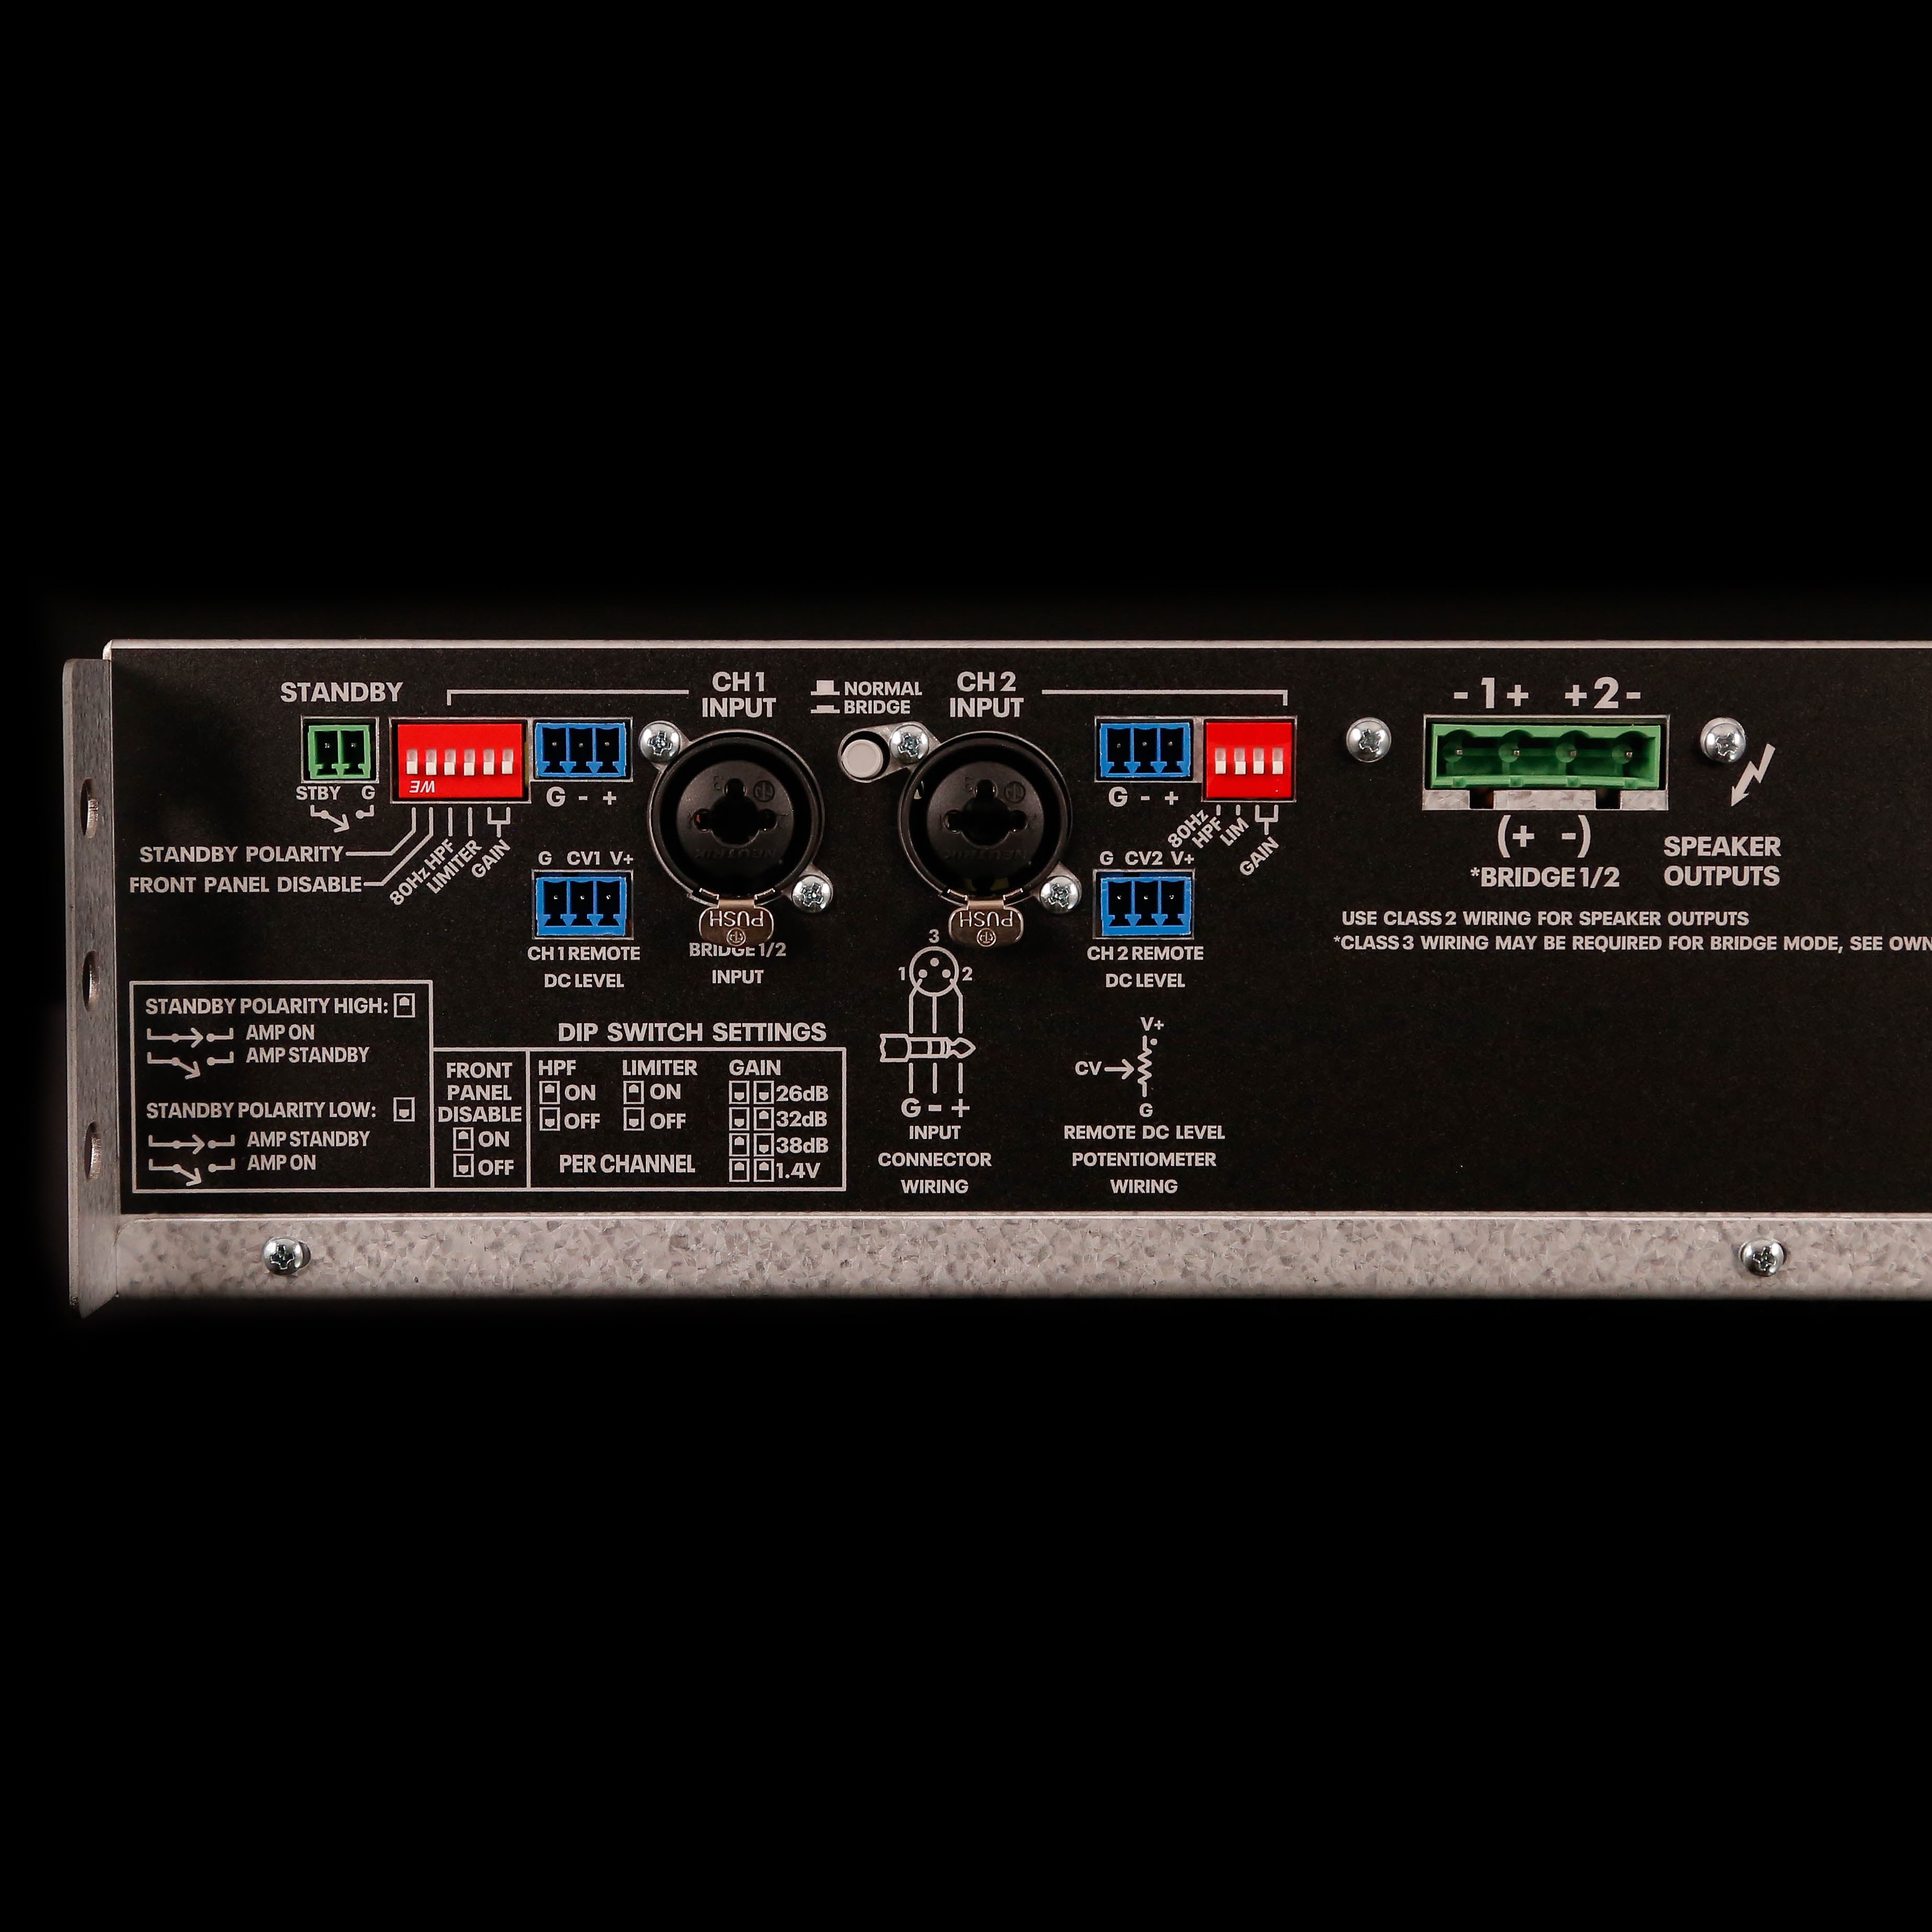 Ashly CA1.52 1,500-watt 2-channel Power Amplifier